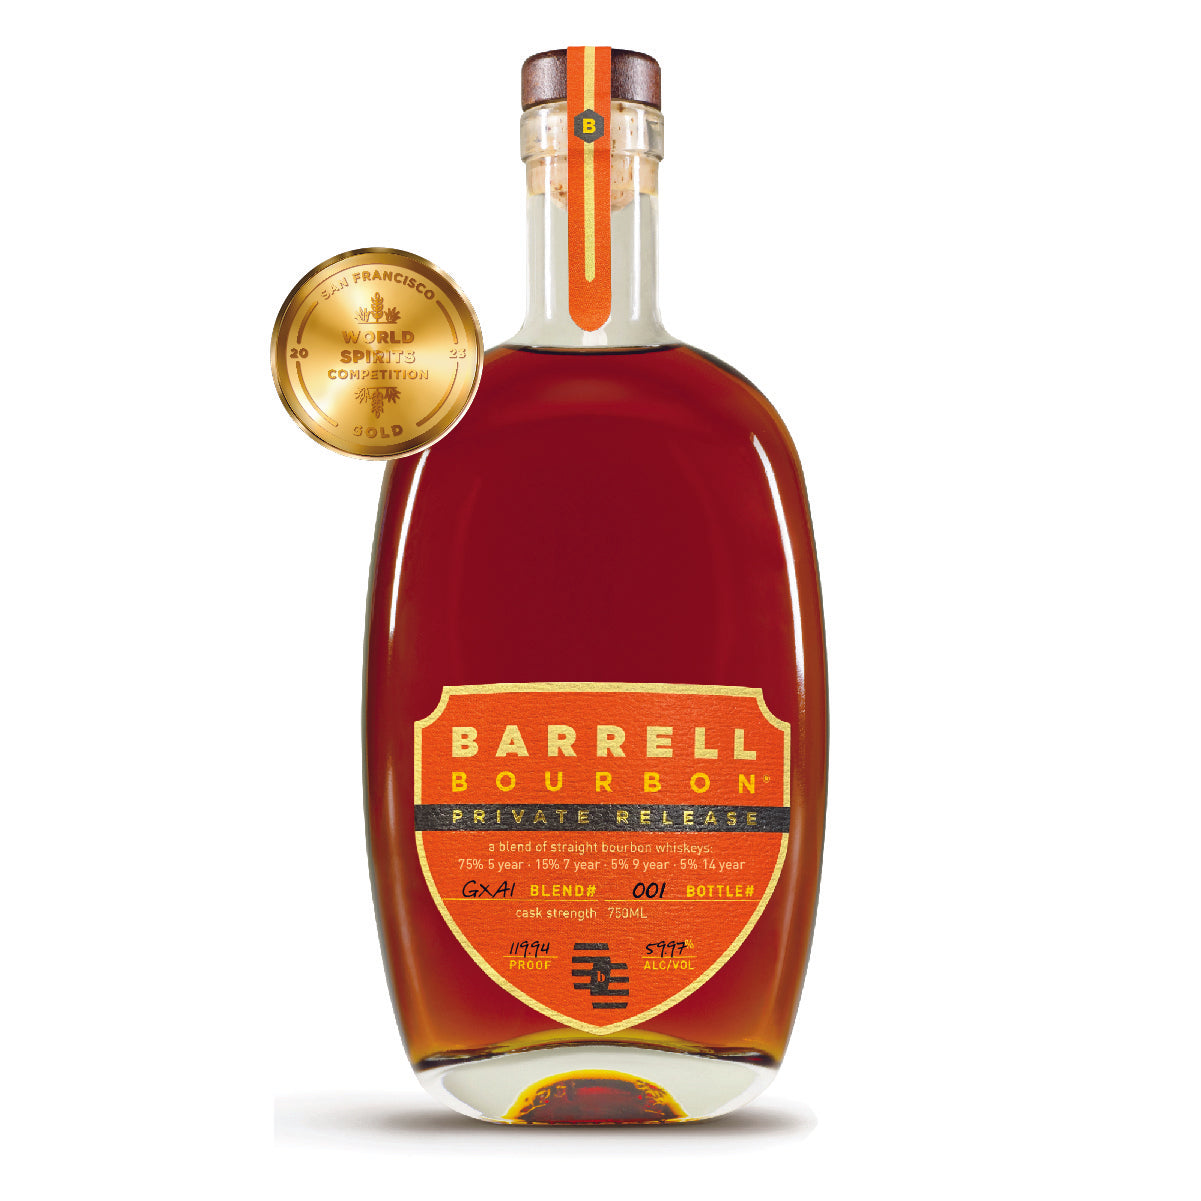 Barrell Bourbon Private Release GXA1: 75% 5 yr, 15% 7 yr, 5% 9 yr, and 5% 14 yr